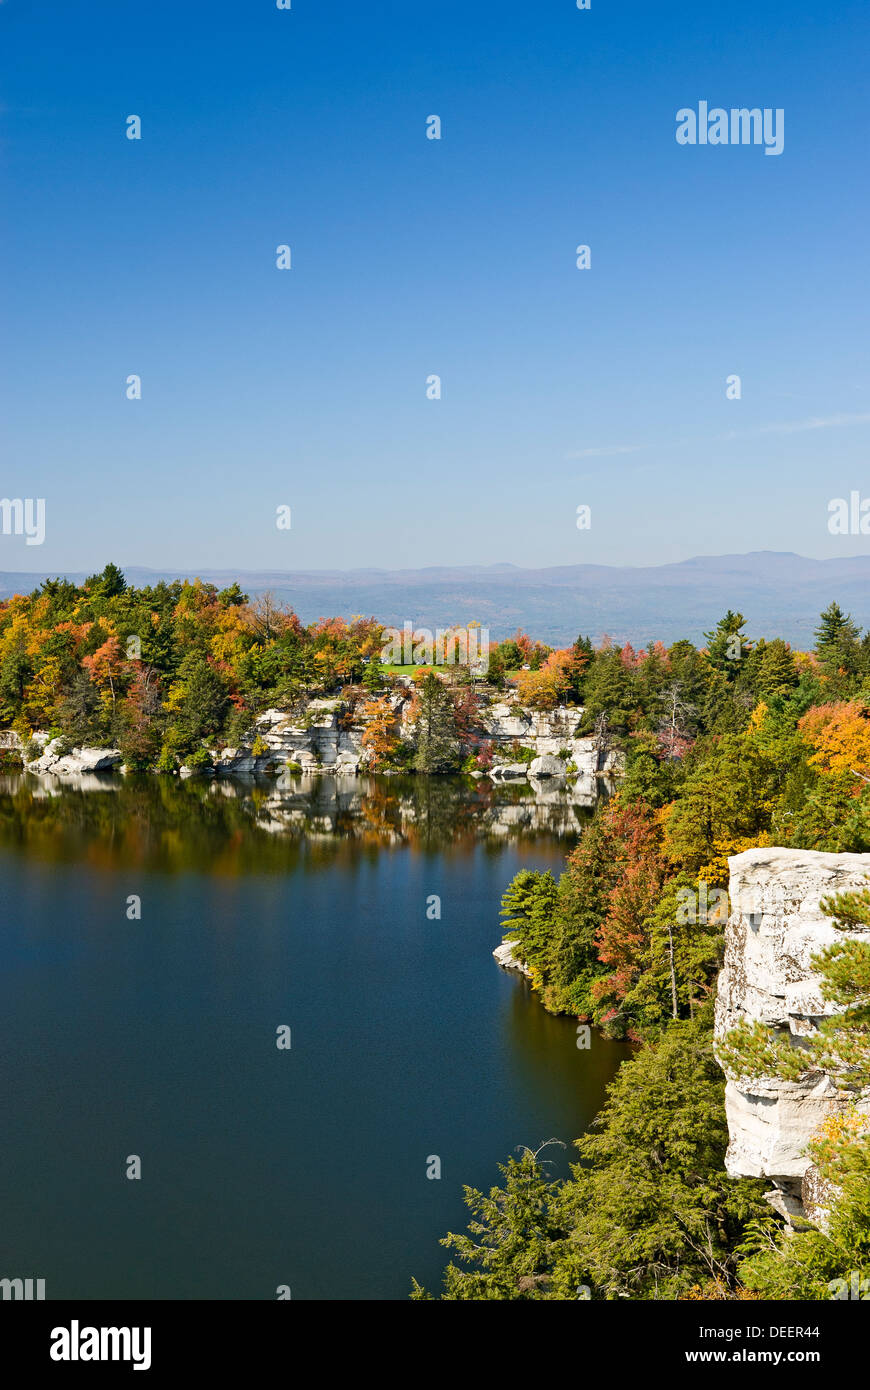 El follaje de otoño en el lago del Parque Estatal Minnewaska Minnewaska a preservar, Ulster County, Estado de Nueva York. Foto de stock